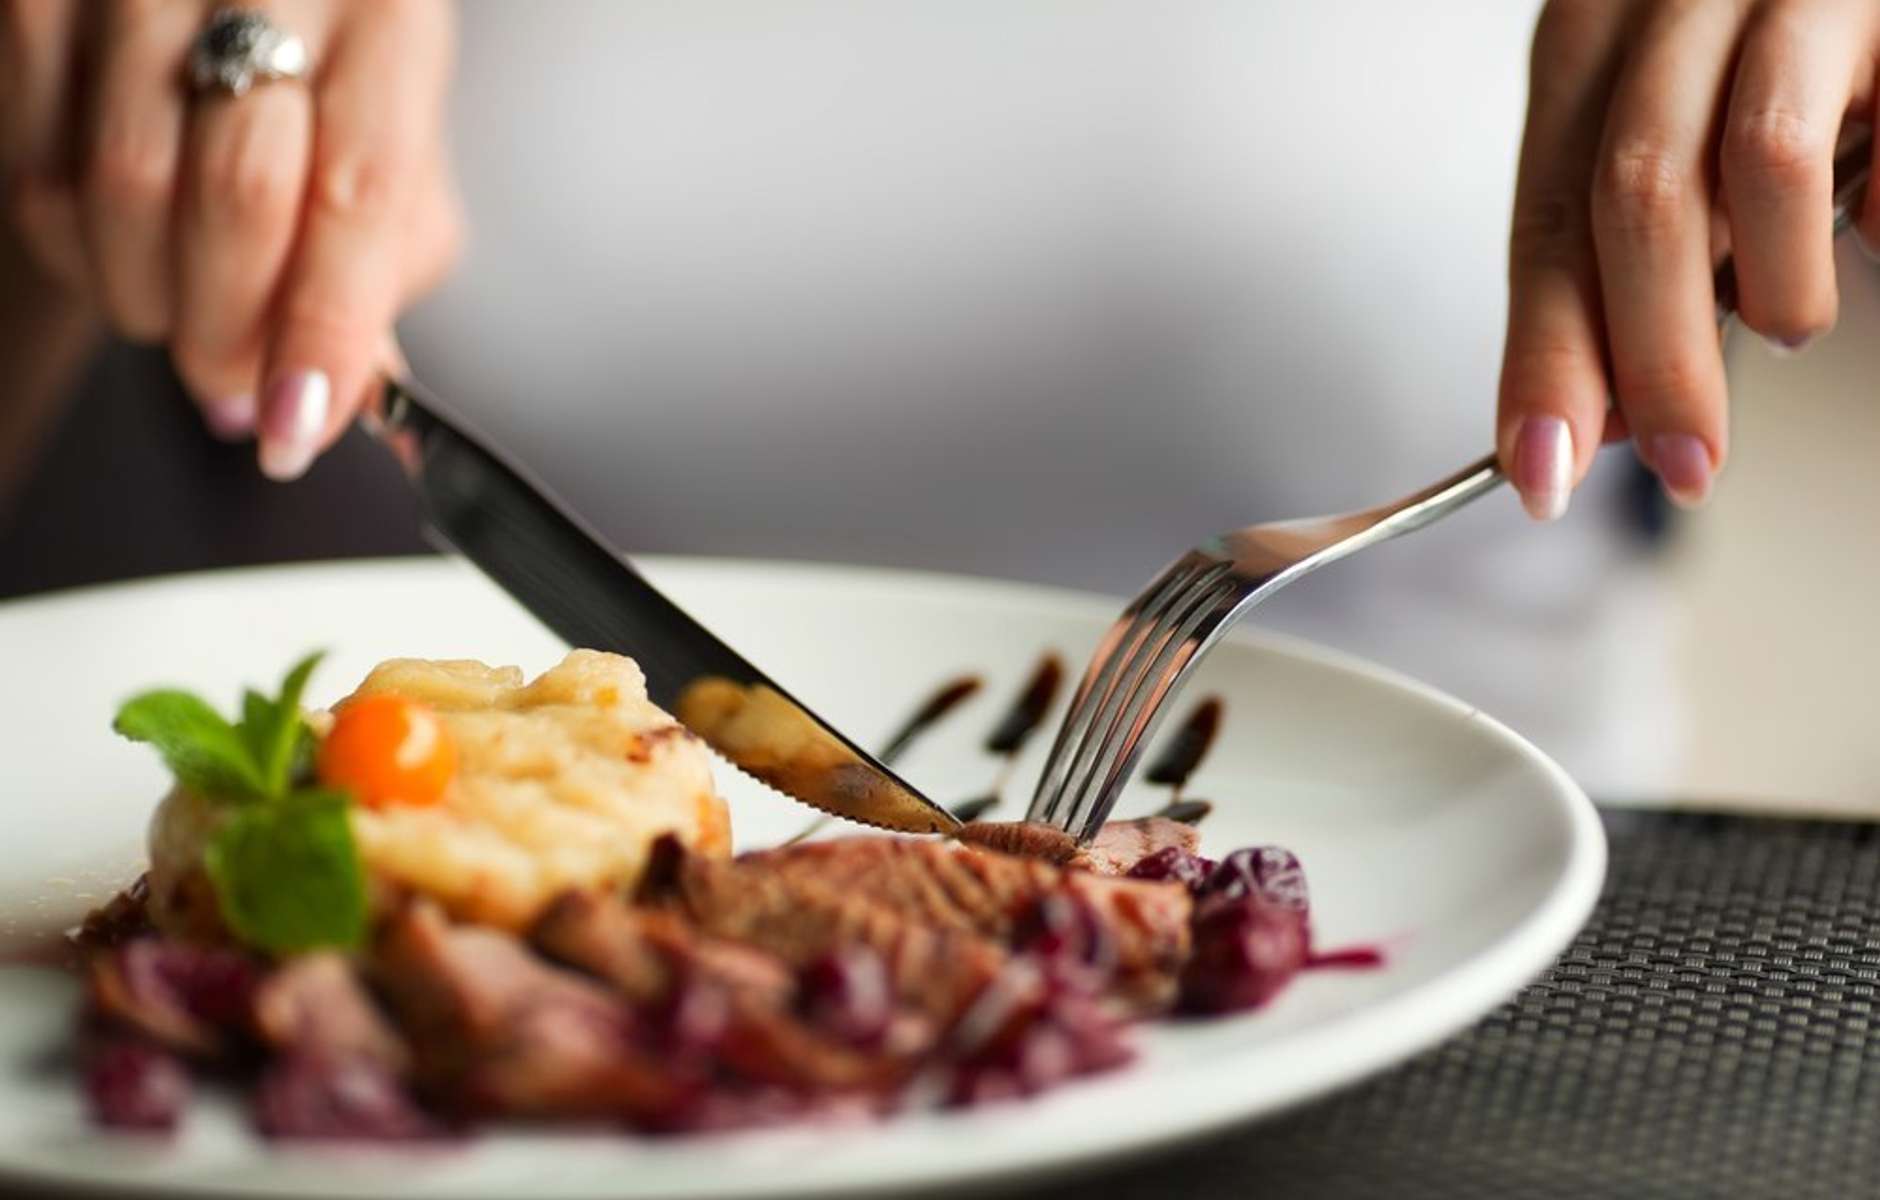 Еда с вилкой и ножом. Еда в ресторане. Тарелка с едой в руках. Кушать вилкой и ножом. Конец ужина